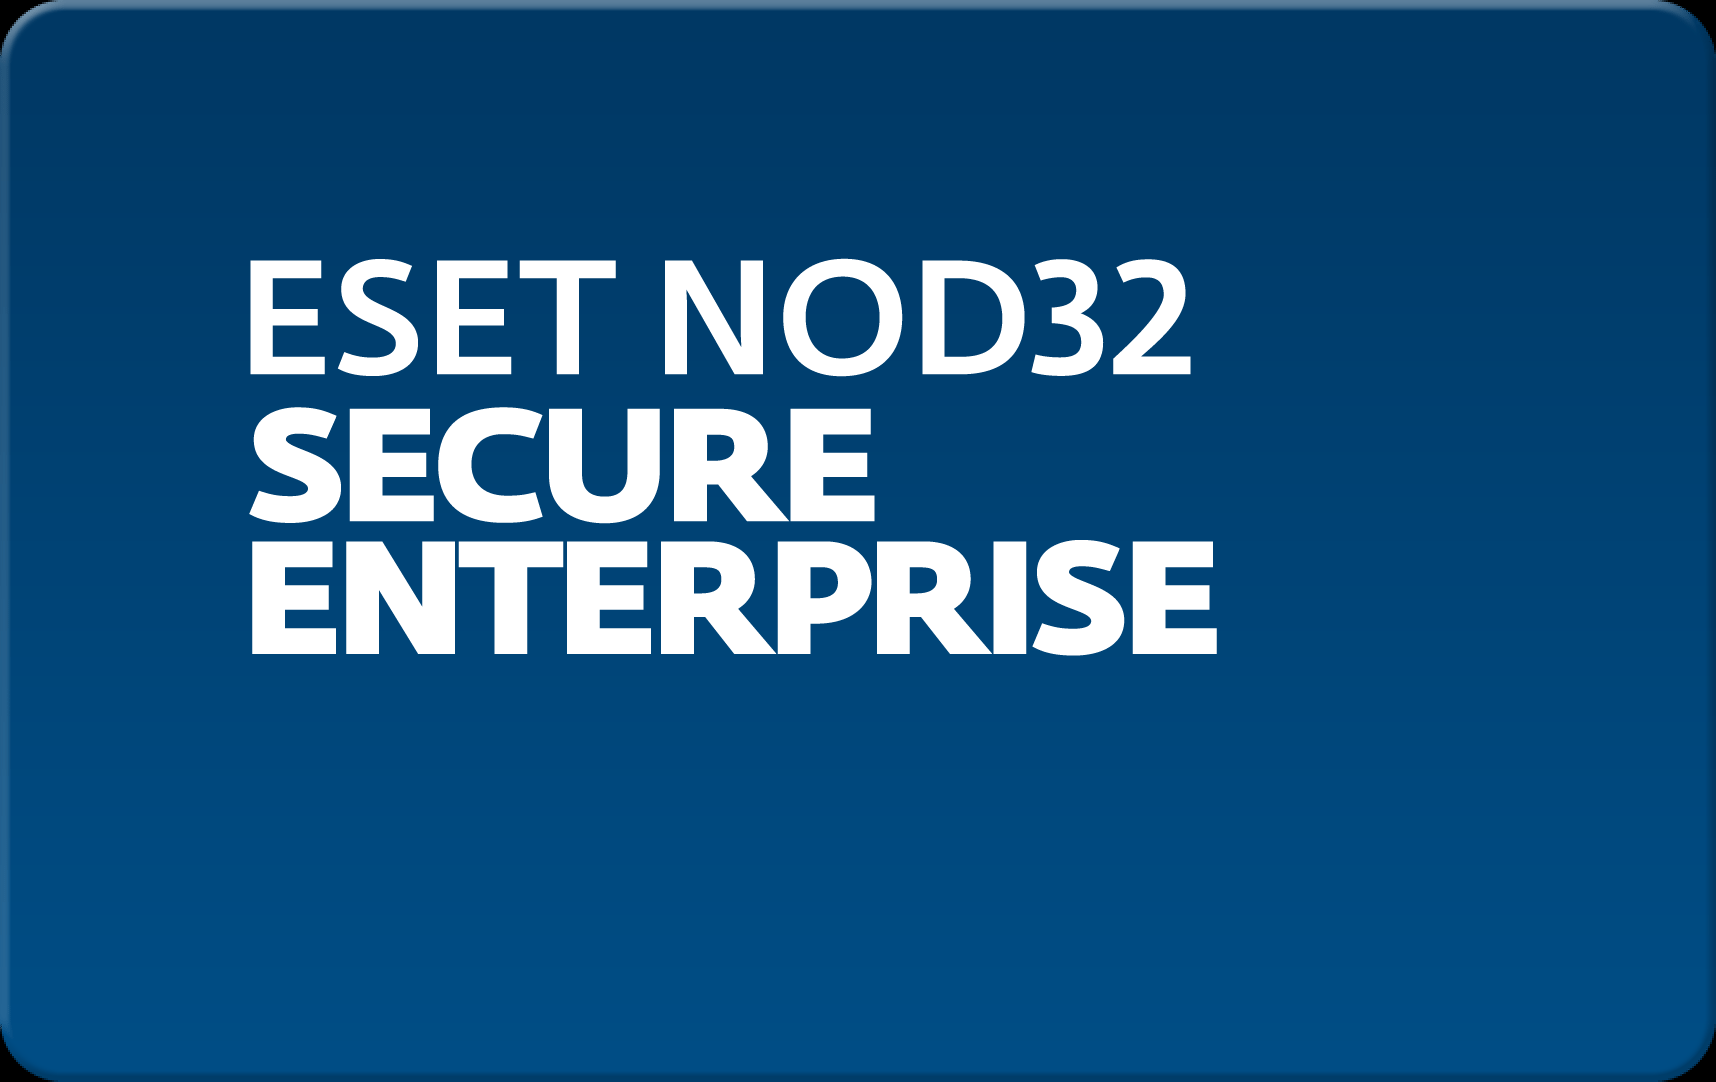 Кроссплатформенная антивирусная защита всех узлов корпоративной сети Eset NOD32 Secure Enterprise для 32 пользователей